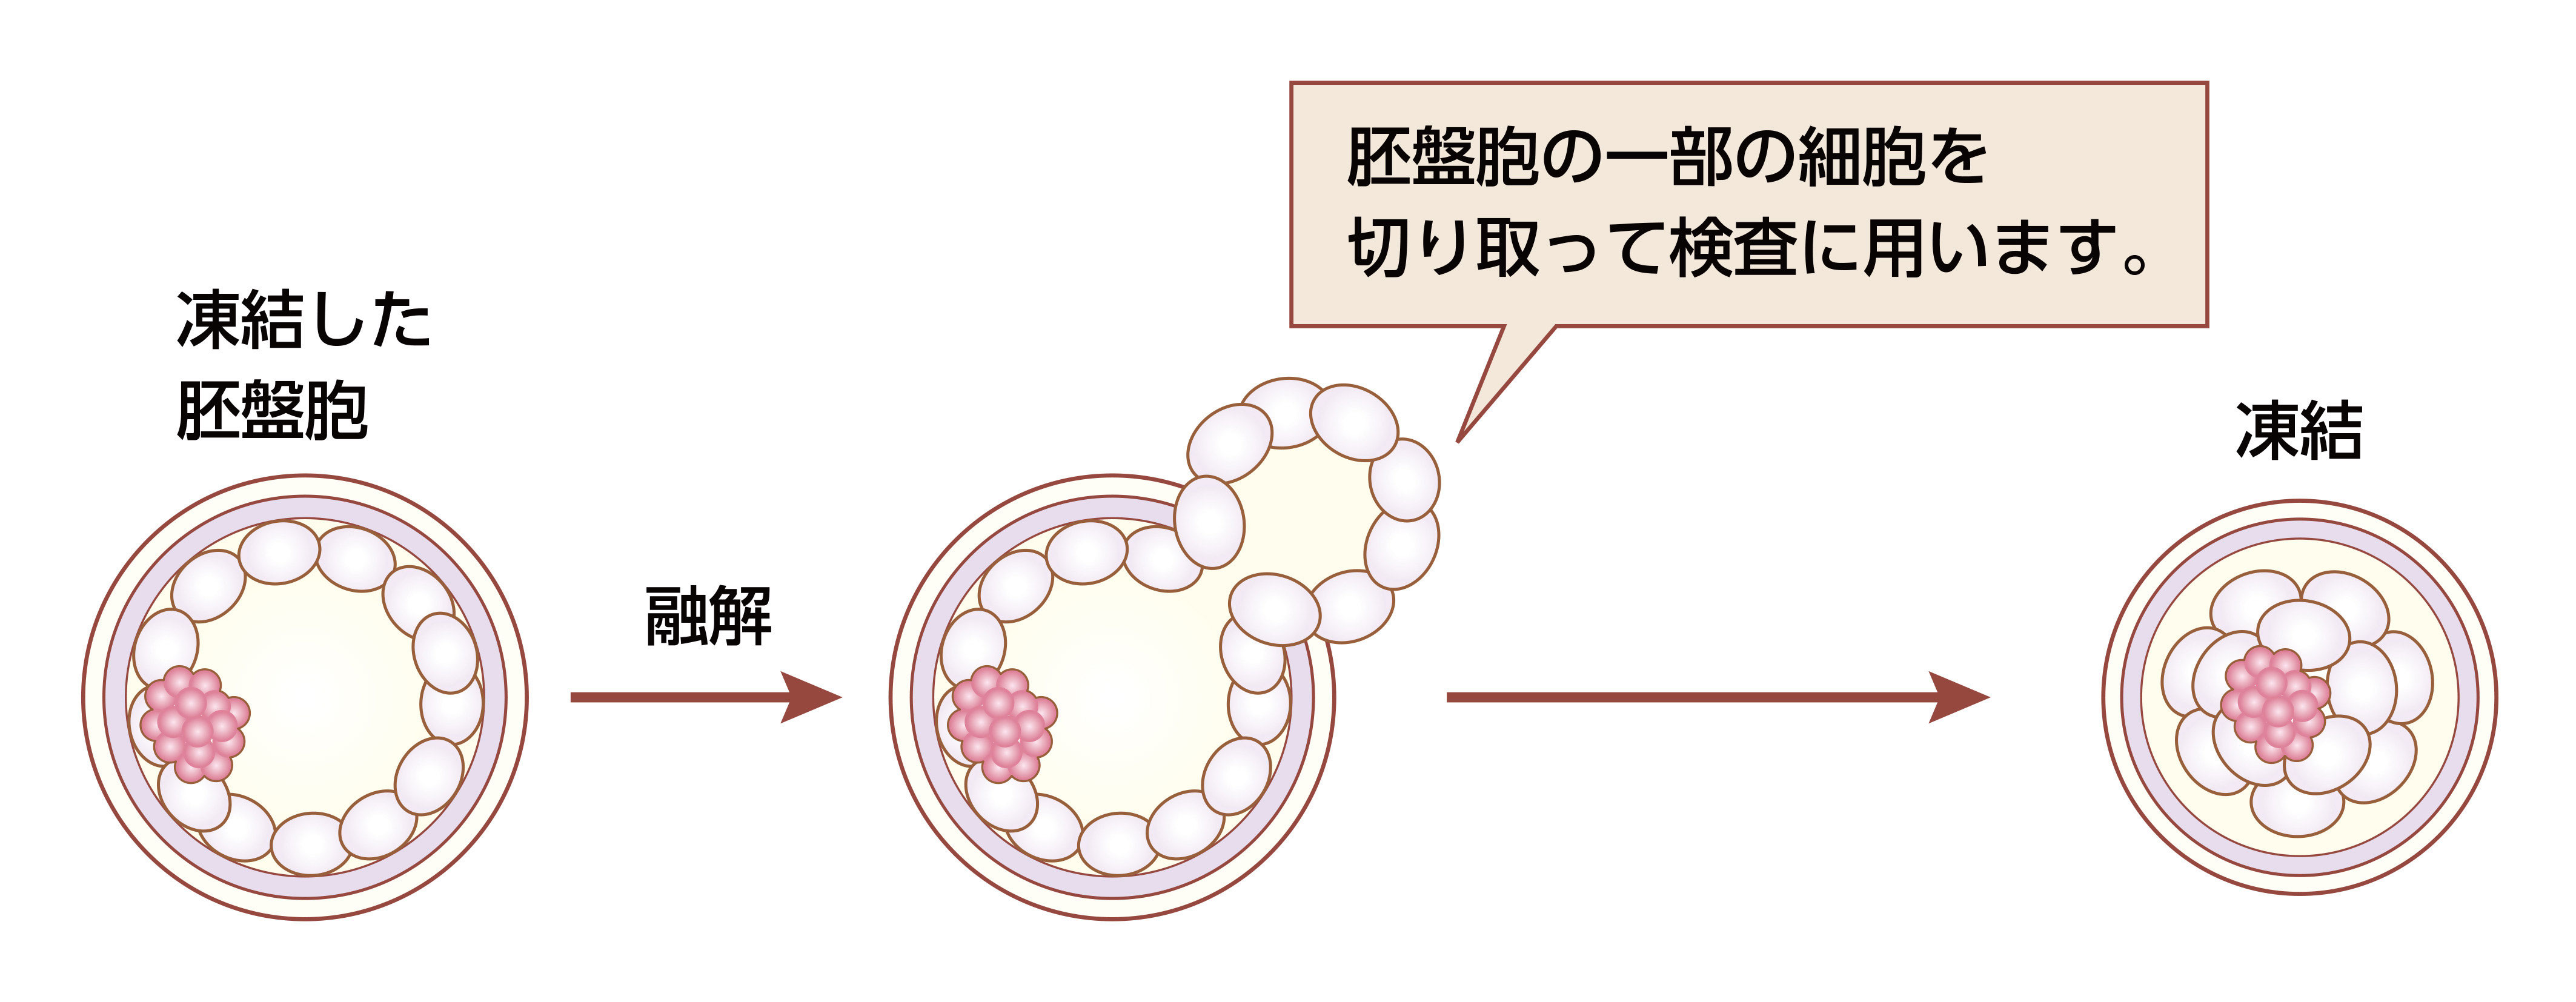 凍結した胚盤胞→融解→胚盤胞の一部の細胞を切り取って検査に用います。→凍結